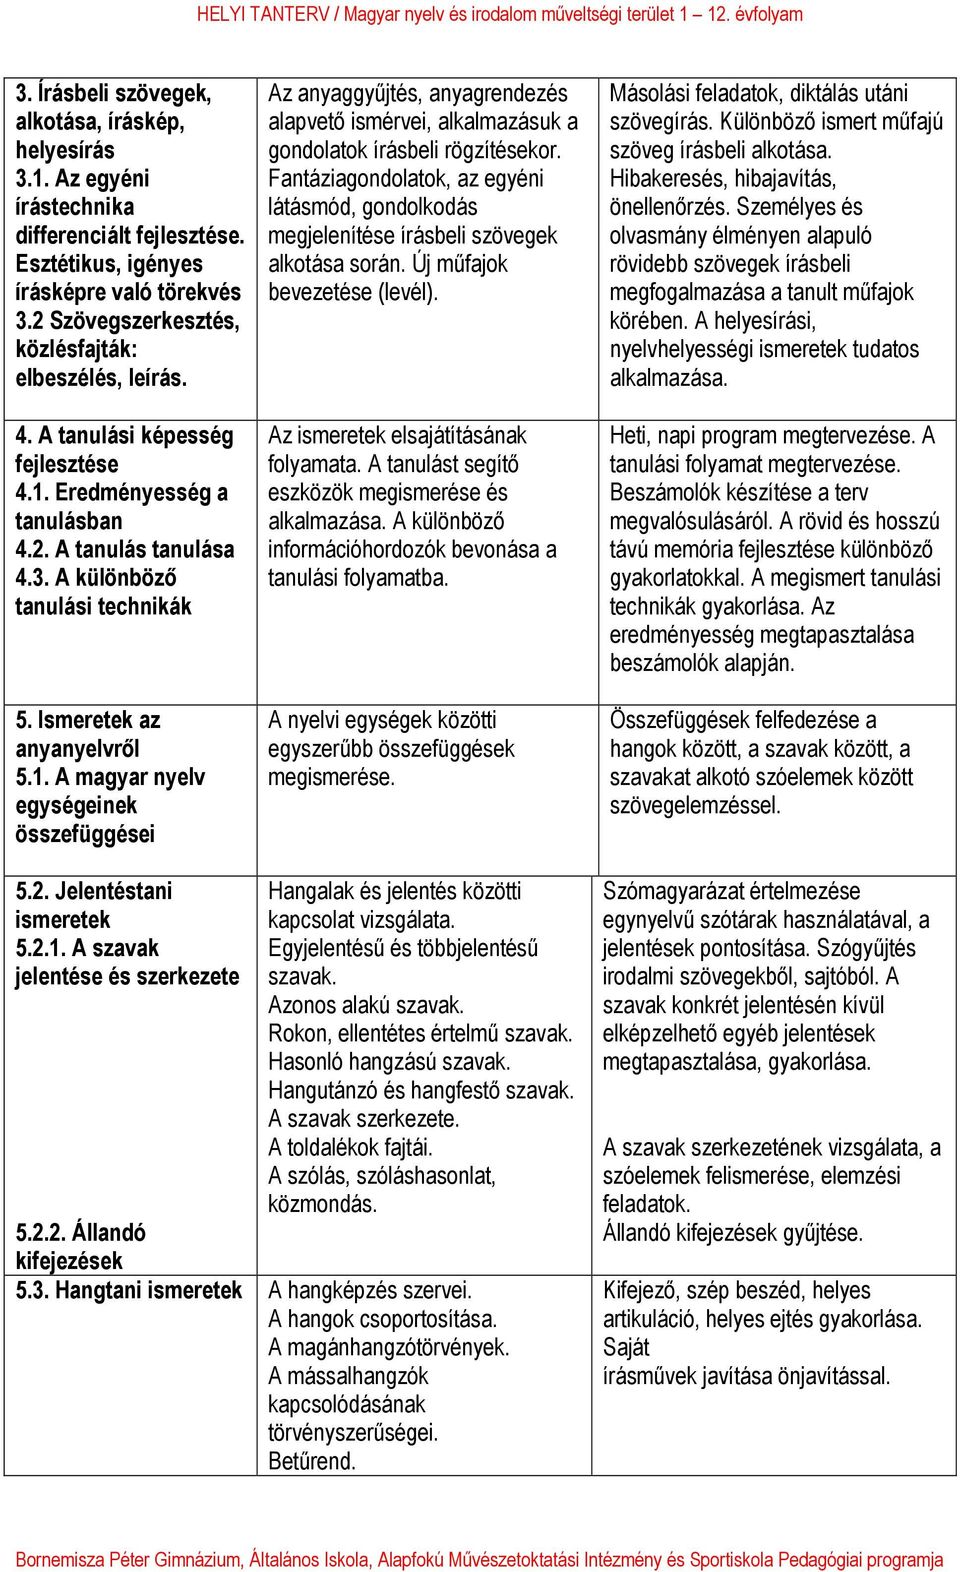 Ismeretek az anyanyelvről 5.1. A magyar nyelv egységeinek összefüggései Az anyaggyűjtés, anyagrendezés alapvető ismérvei, alkalmazásuk a gondolatok írásbeli rögzítésekor.